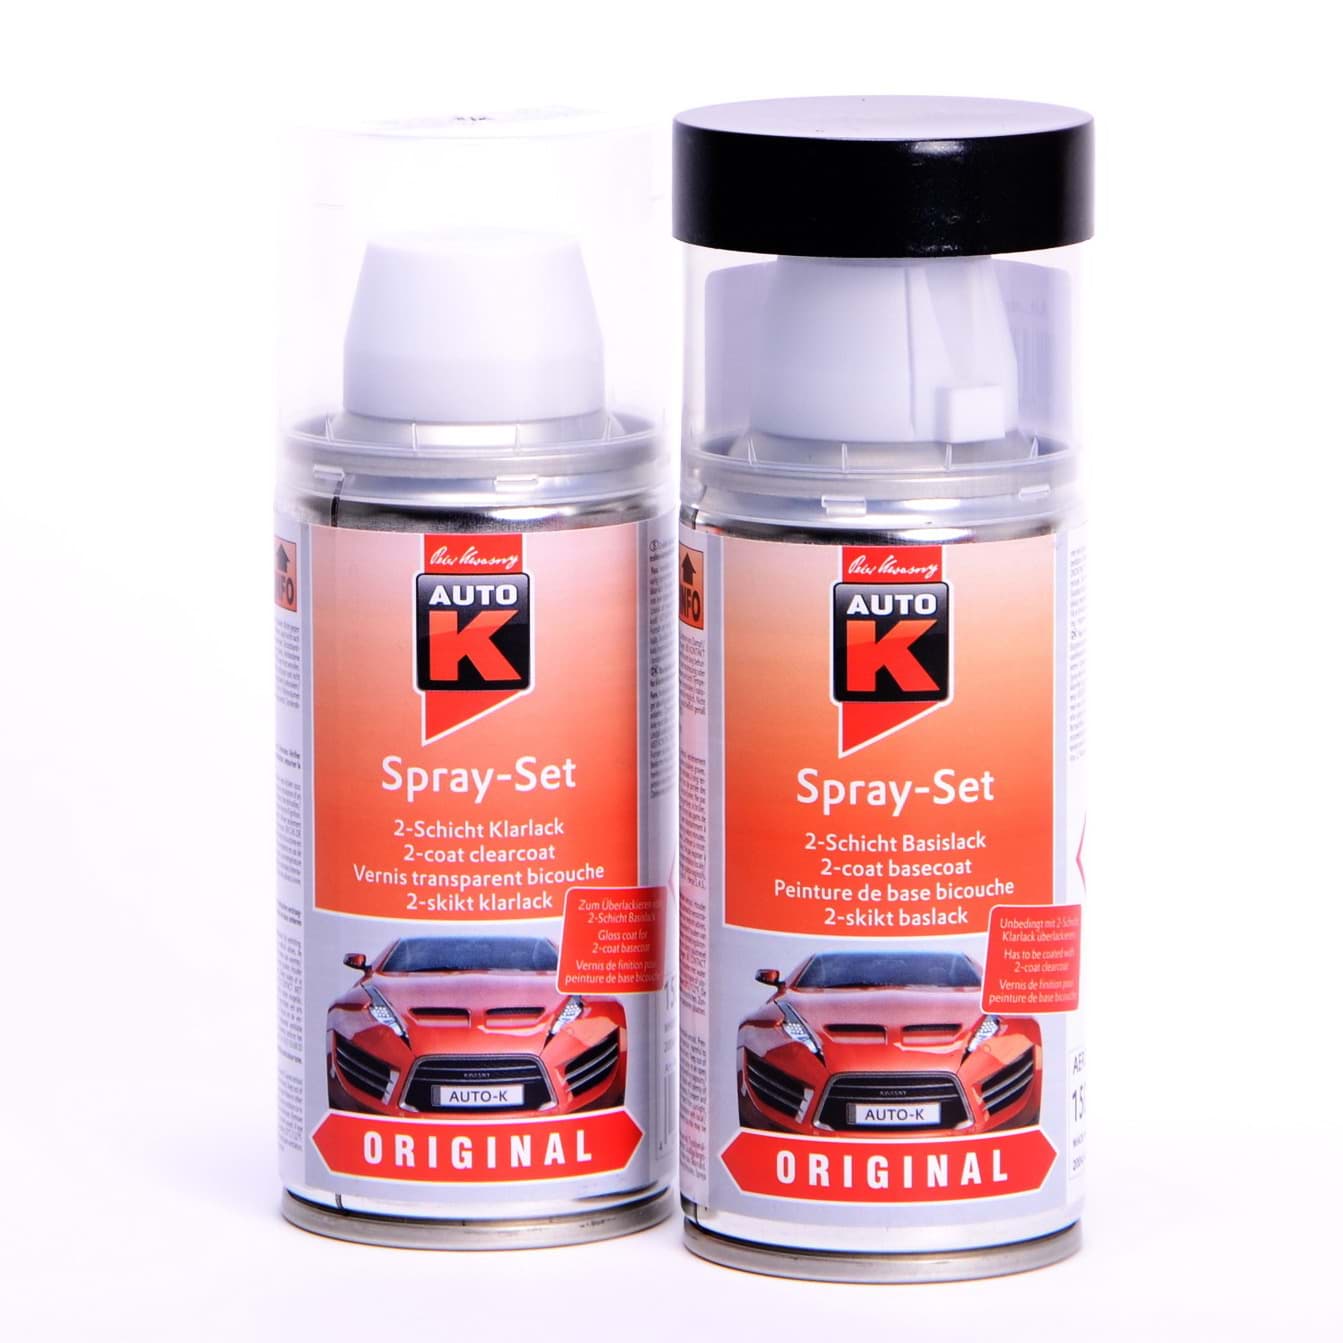 Afbeelding van Auto-K Spray-Set Autolack für Mercedes 745 Kristallsilber met 23272